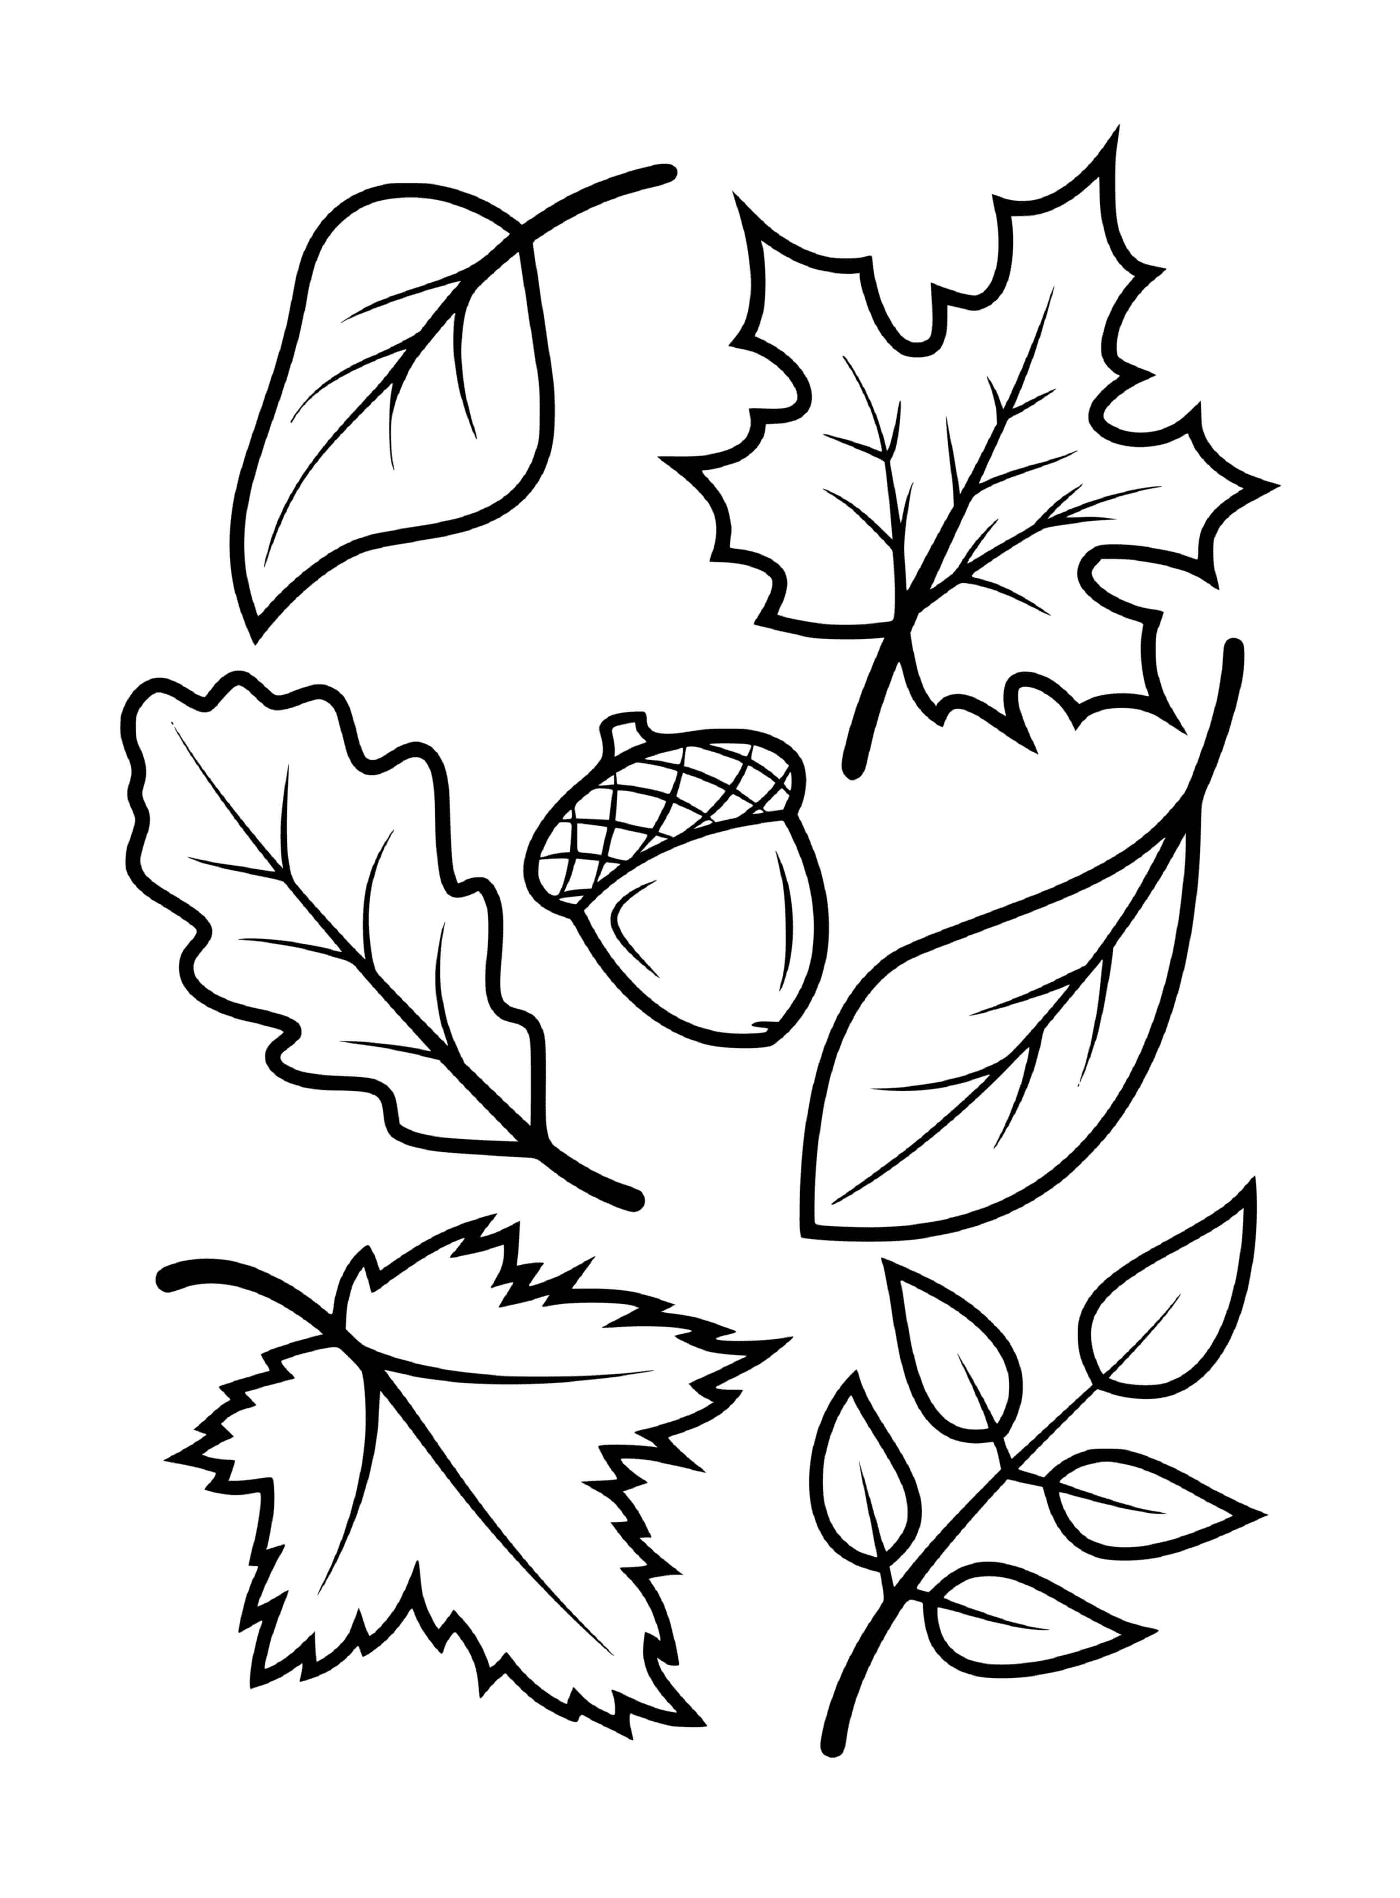  Листья и желудки осенних деревьев (например, клен, бук, дуб) 